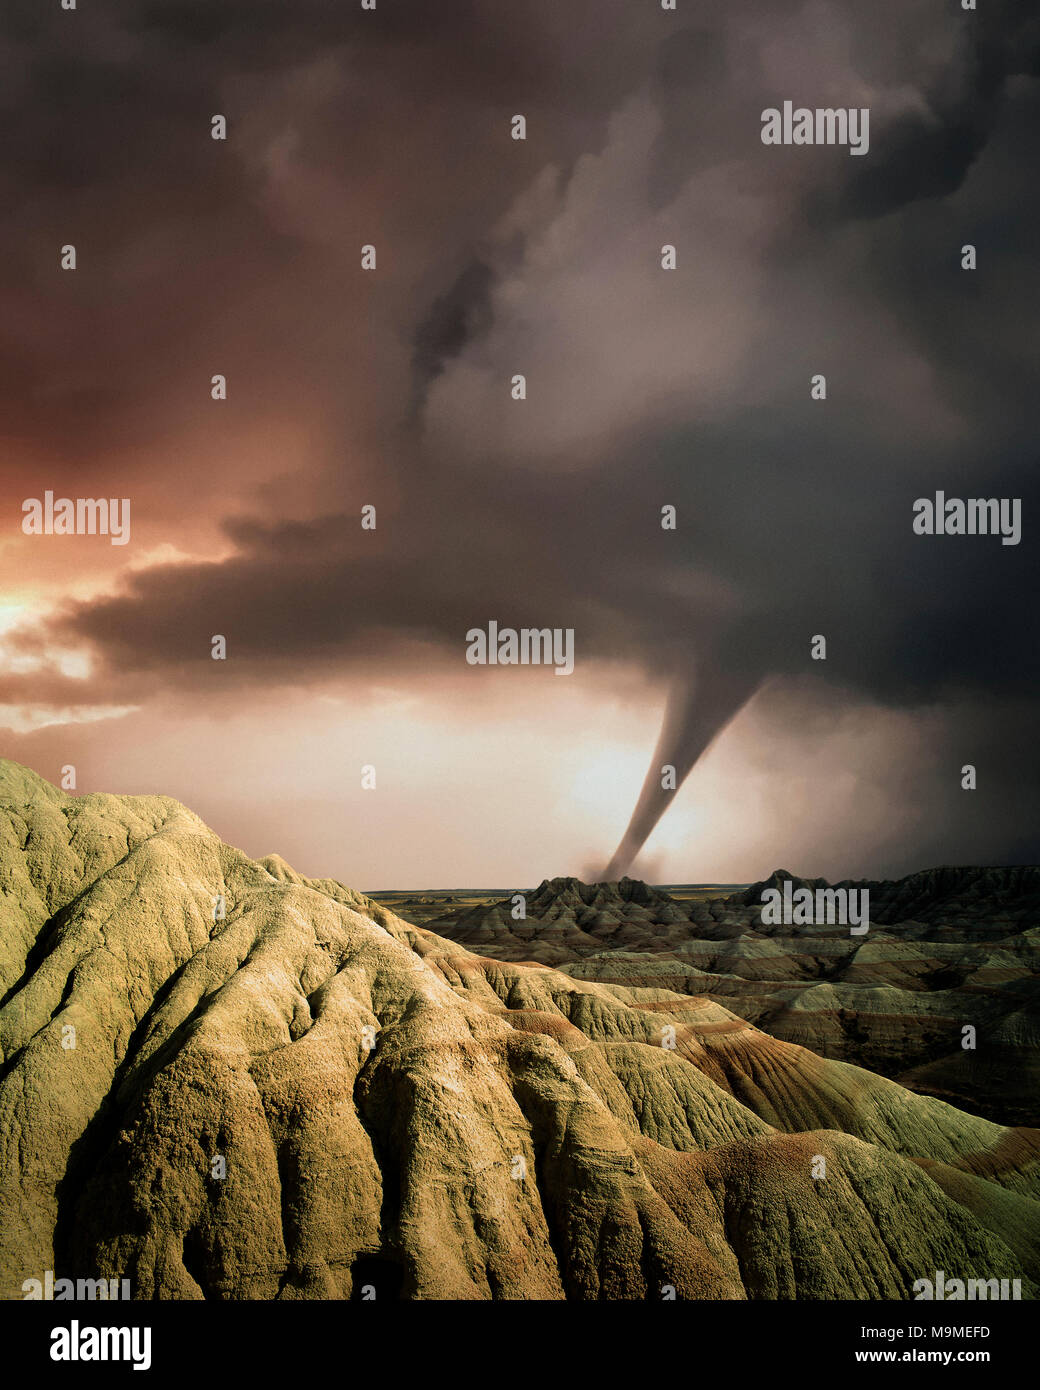 USA - SOUTH DAKOTA: Tornado over Badlands National Park Stock Photo